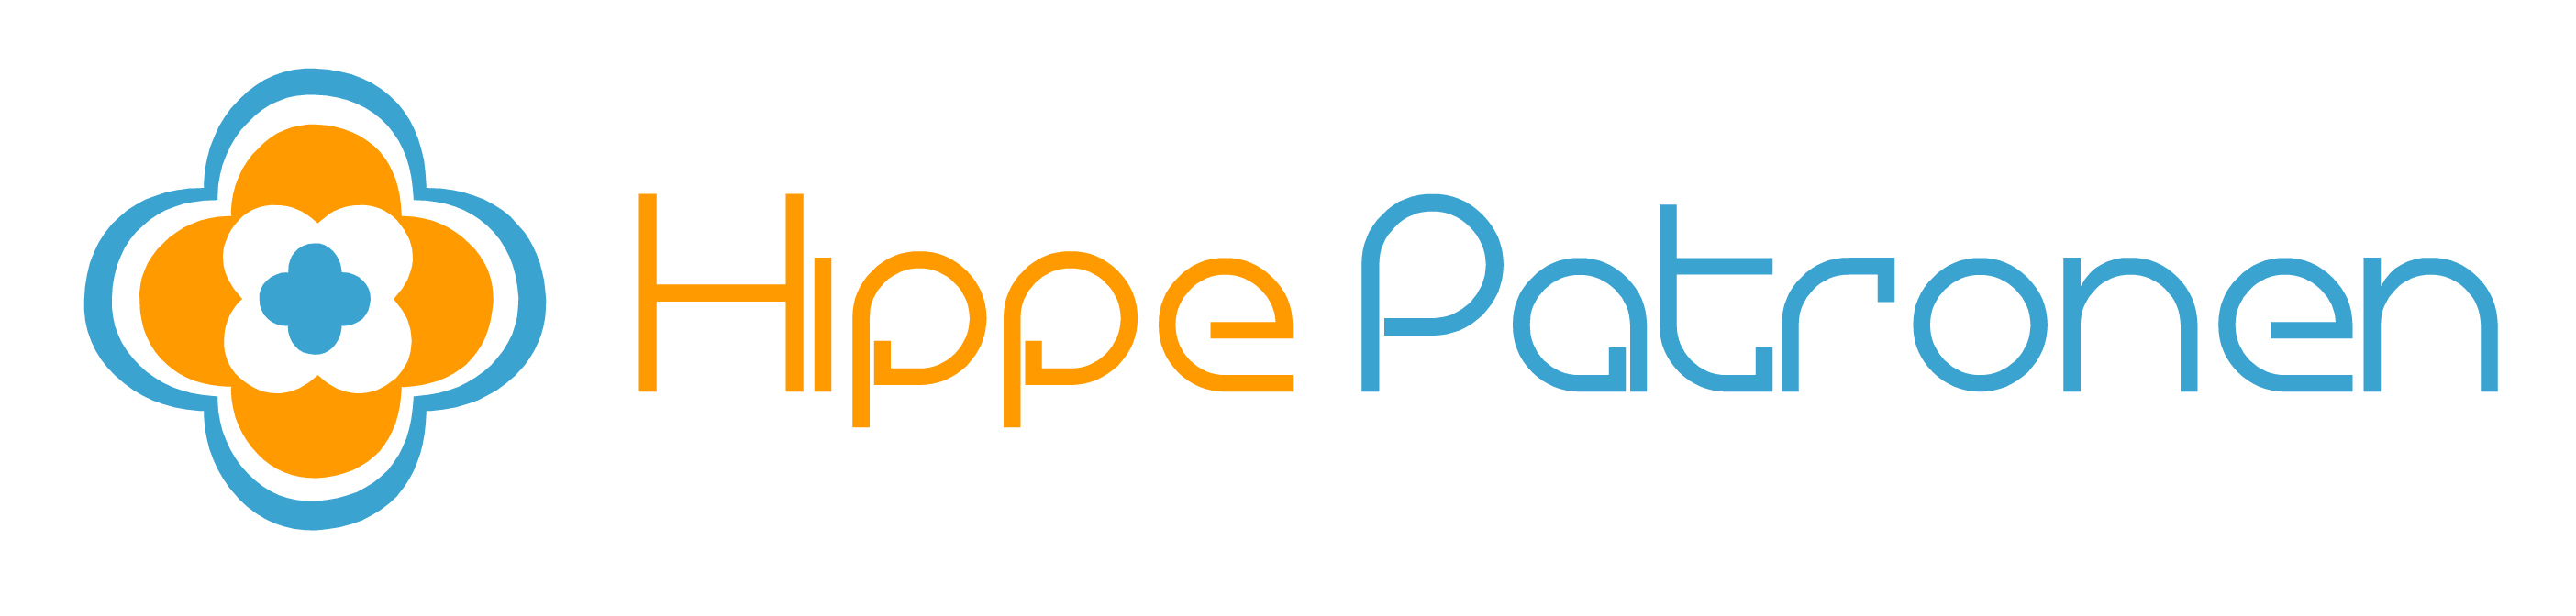 HippePatronen logo